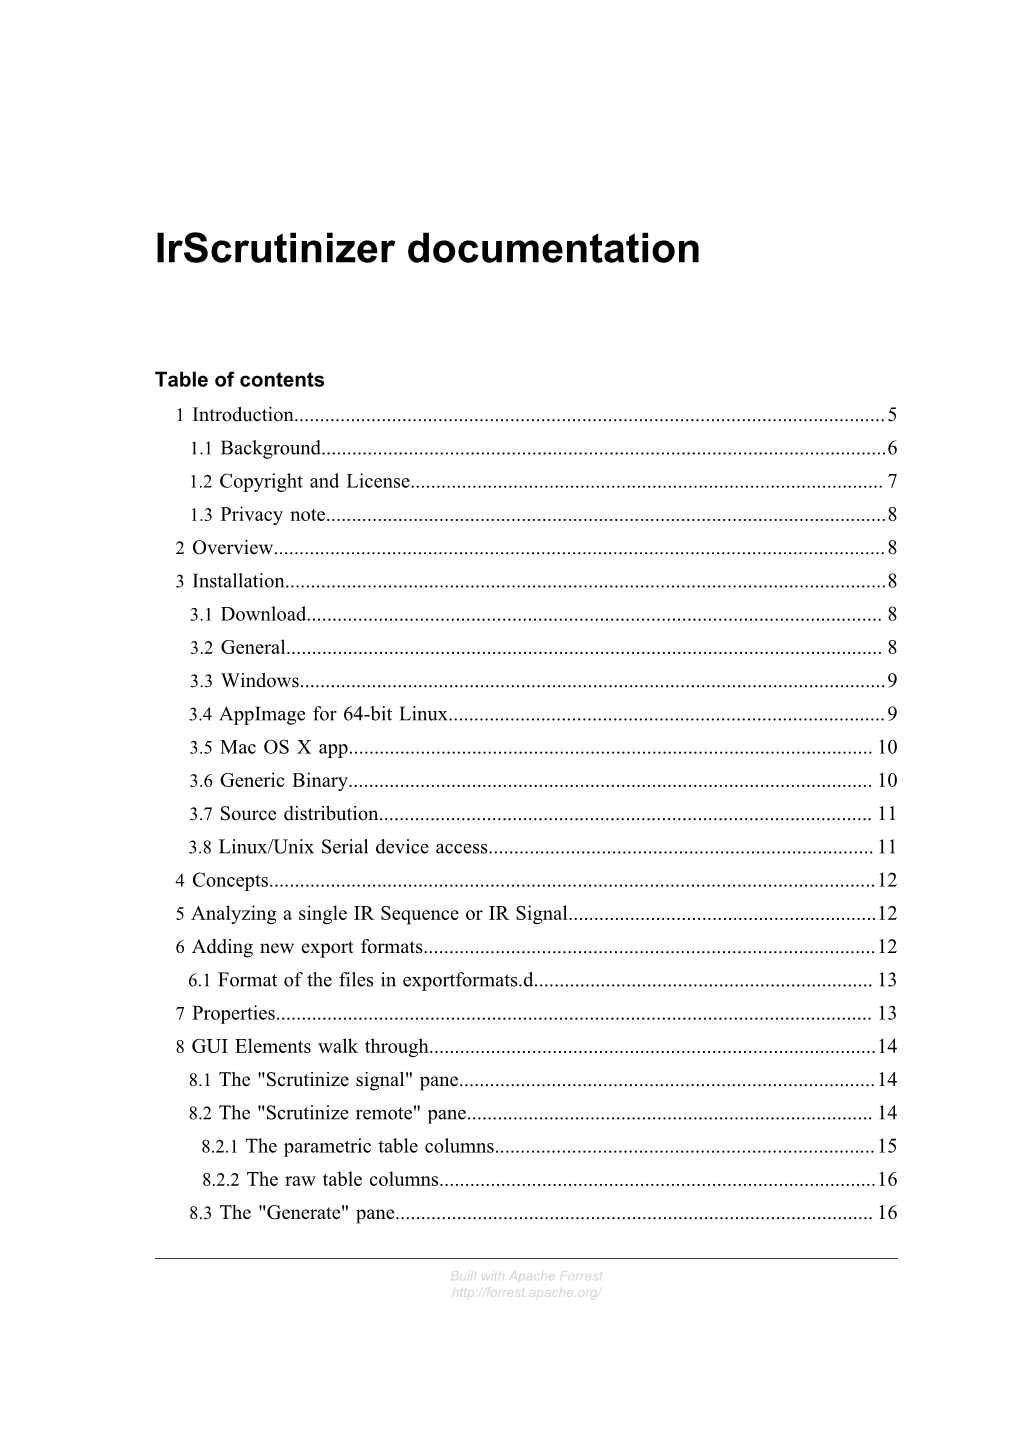 Irscrutinizer Documentation